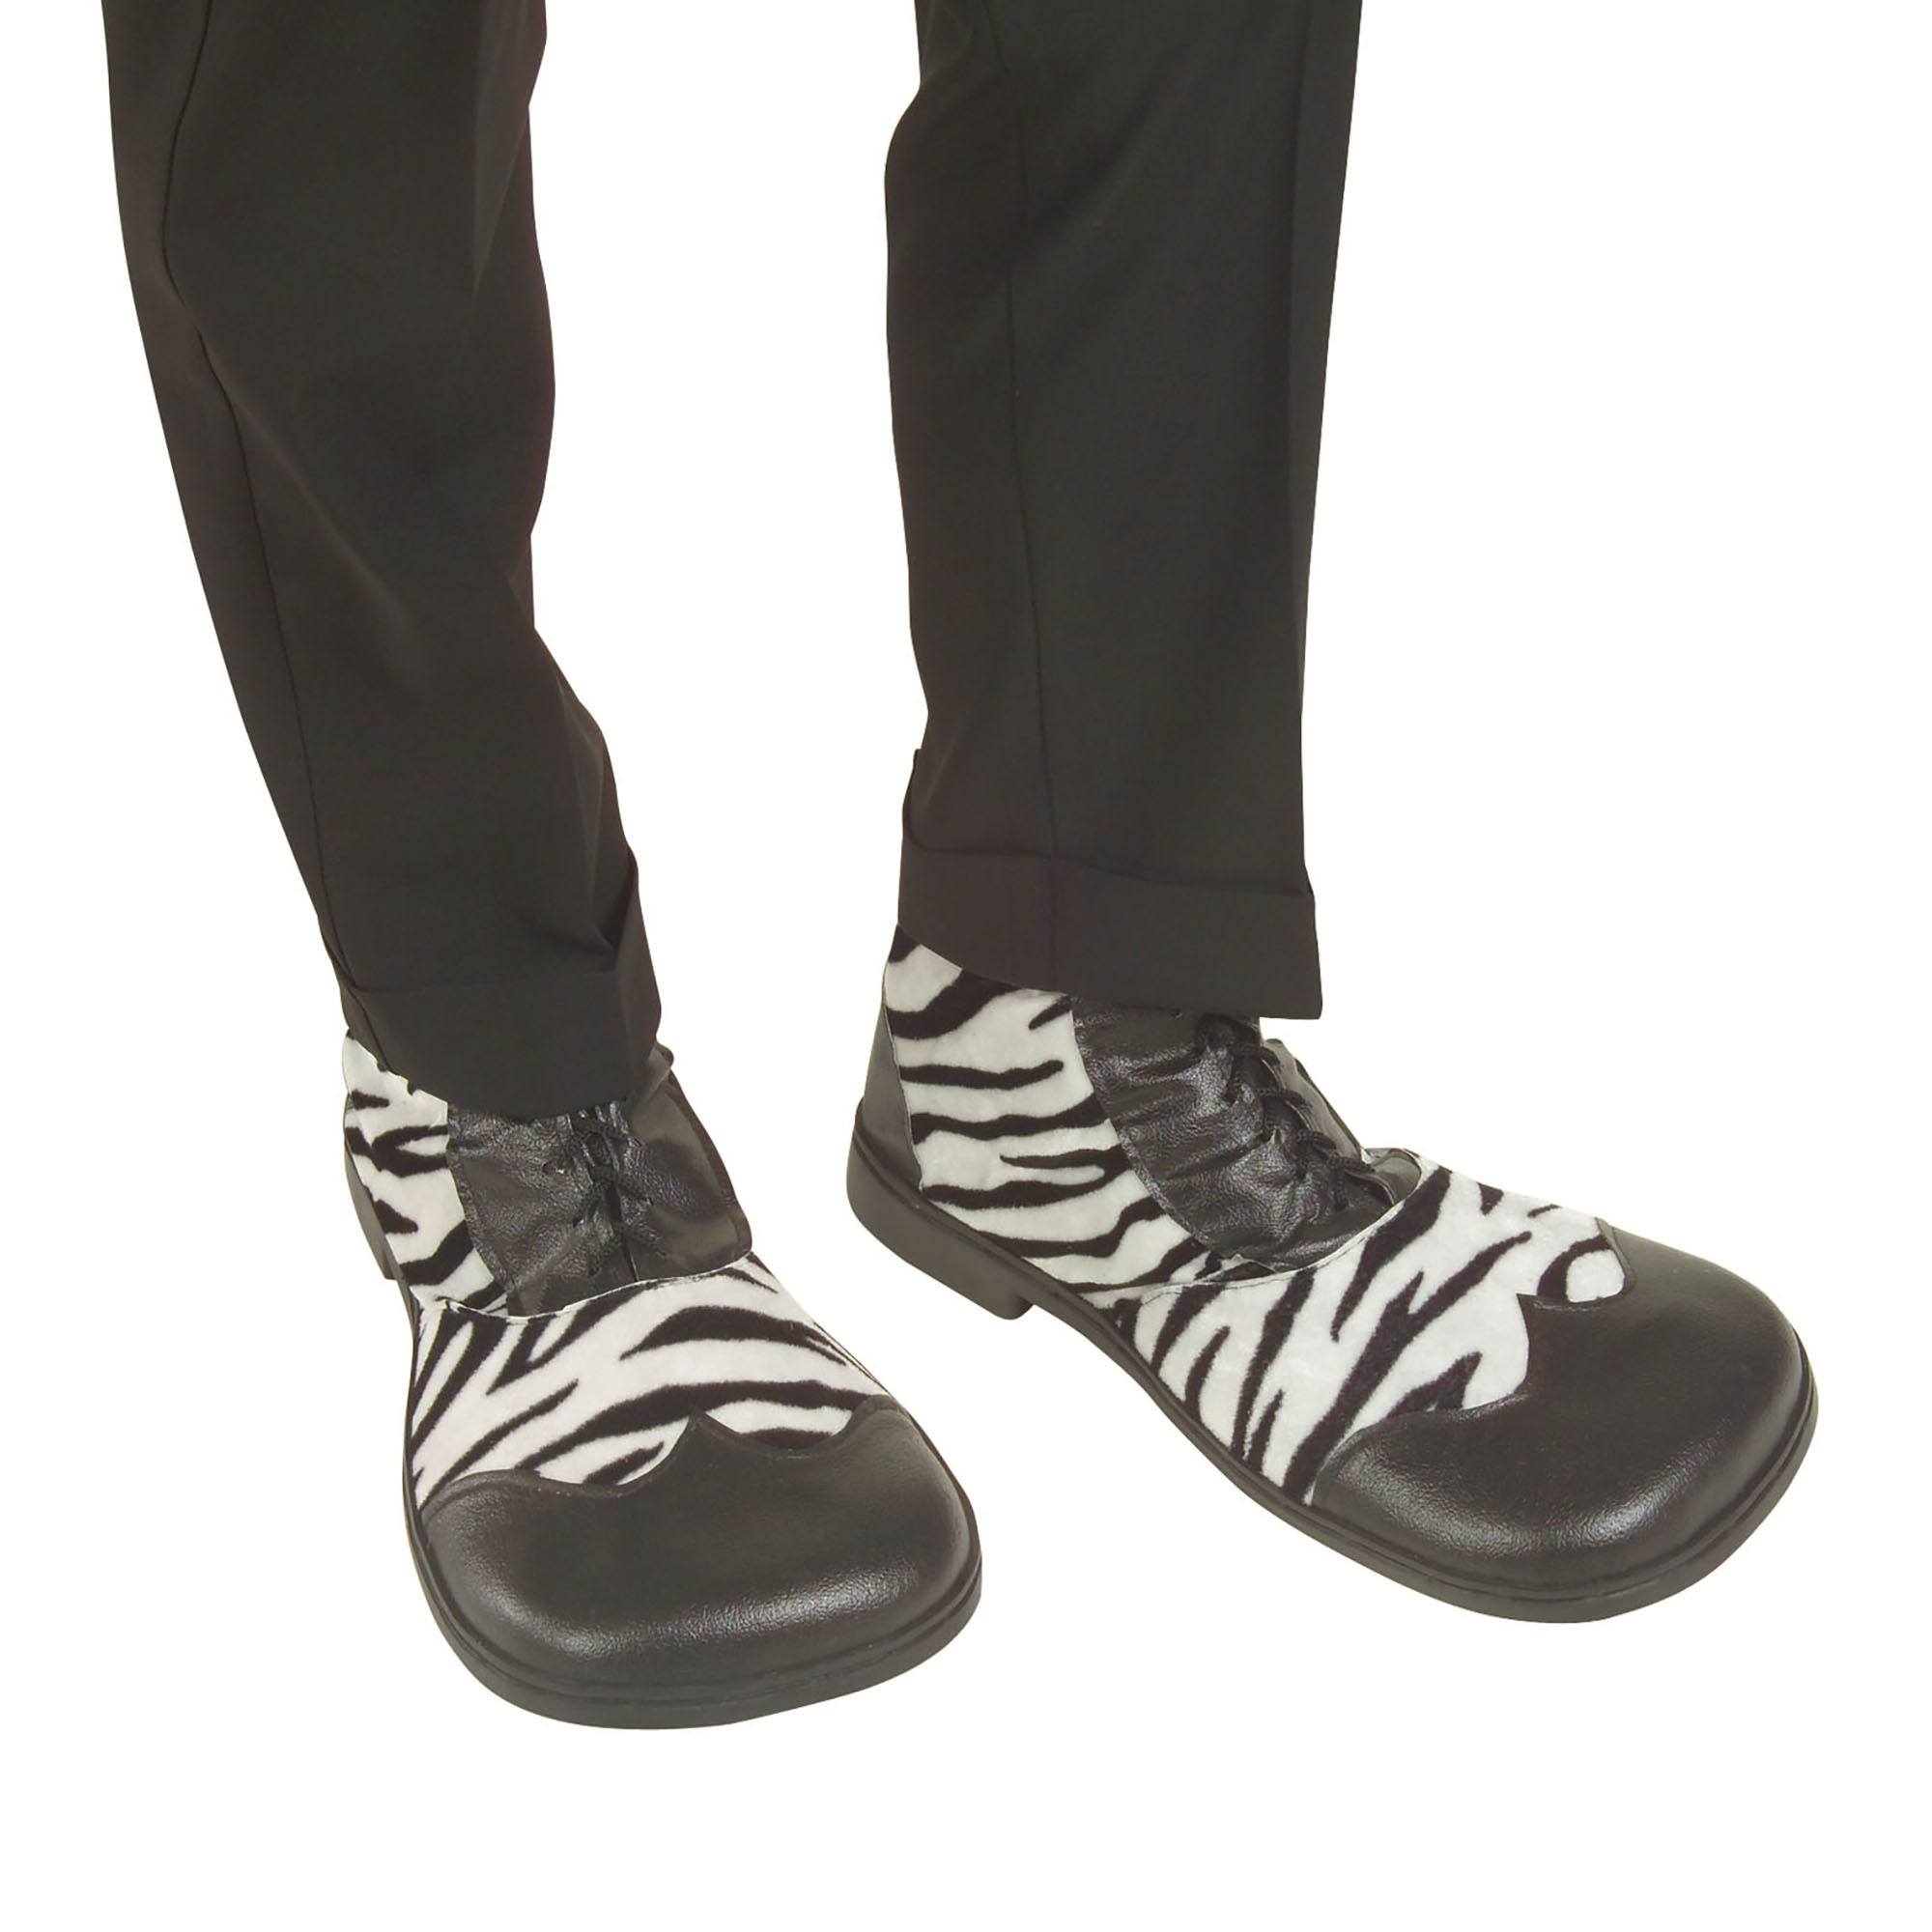 Party schoenen zebra print met rubber zool